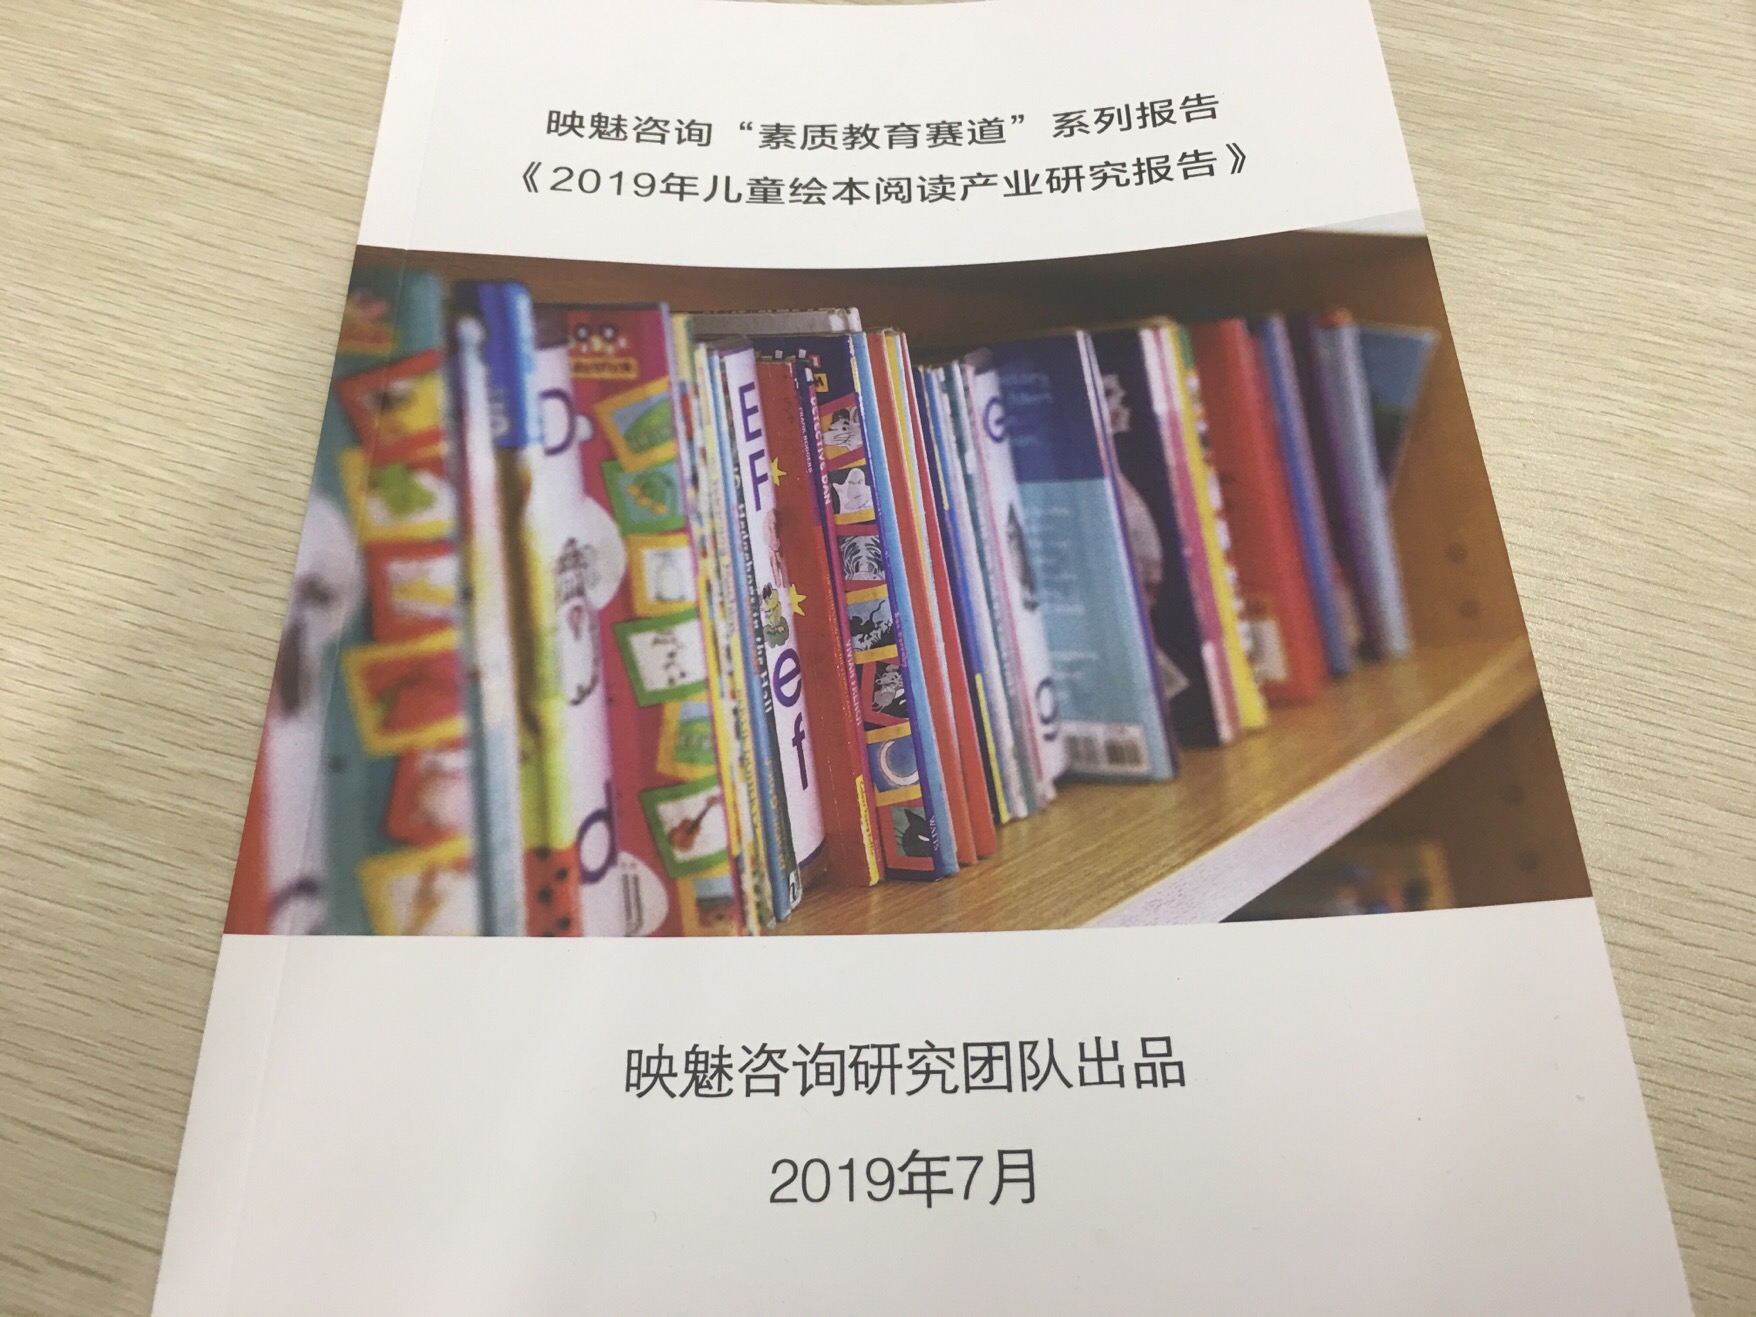 映魅咨询发布《2019年儿童绘本阅读产业研究报告》，一个蓄势待发的市场